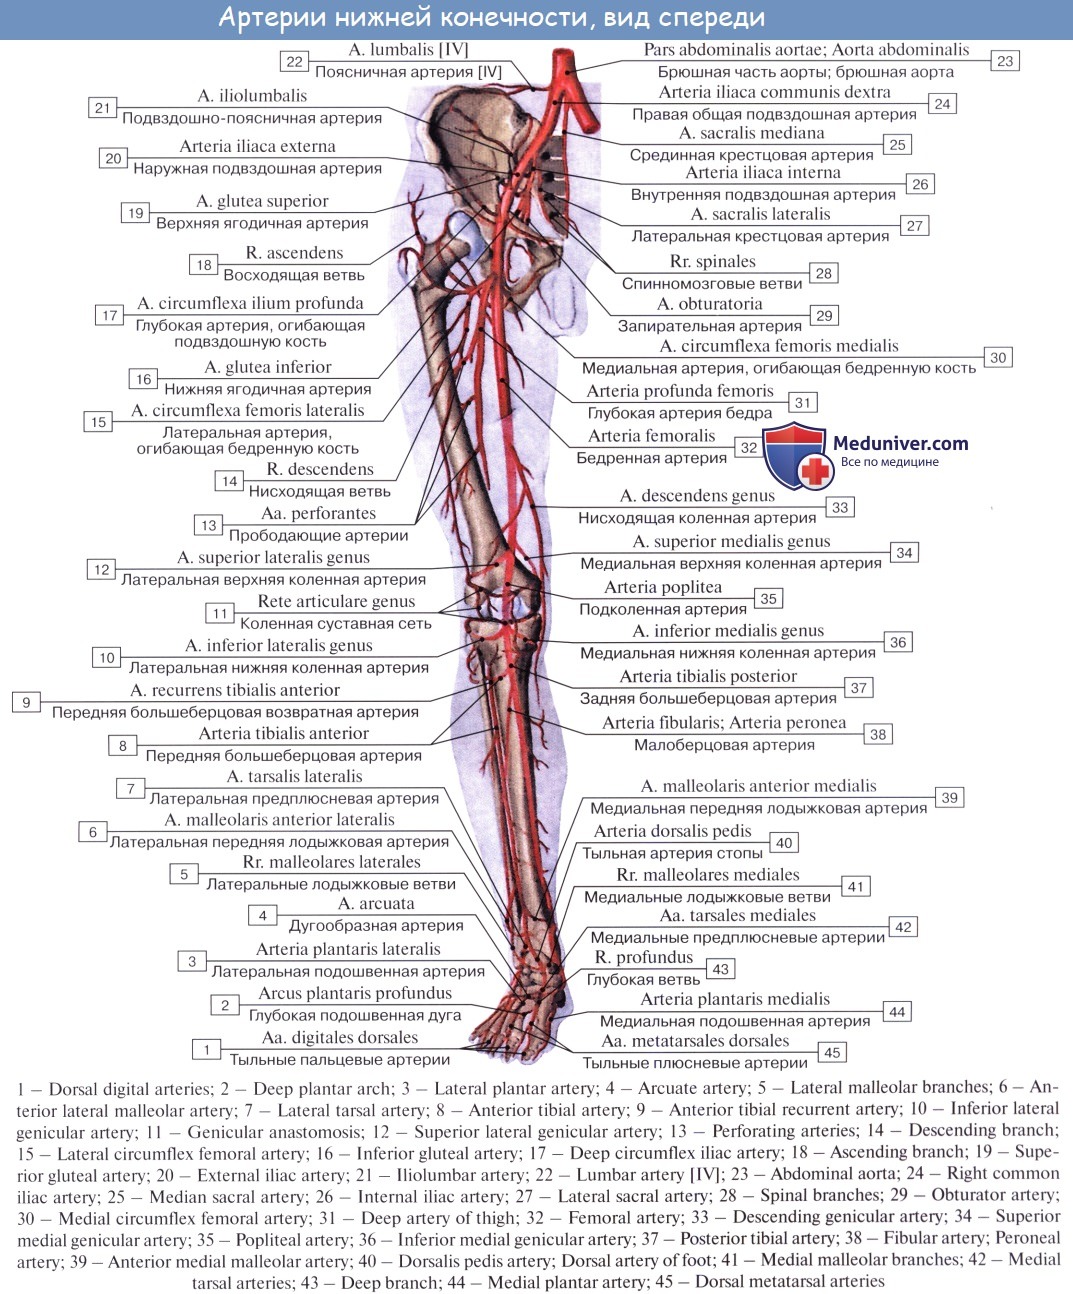 Статья артерия жизни по дну чего. Ветви артерии femoralis. Бедренная артерия анатомия. Схема артерий нижних конечностей вид спереди. Артерии верхней конечности анатомия на латинском.